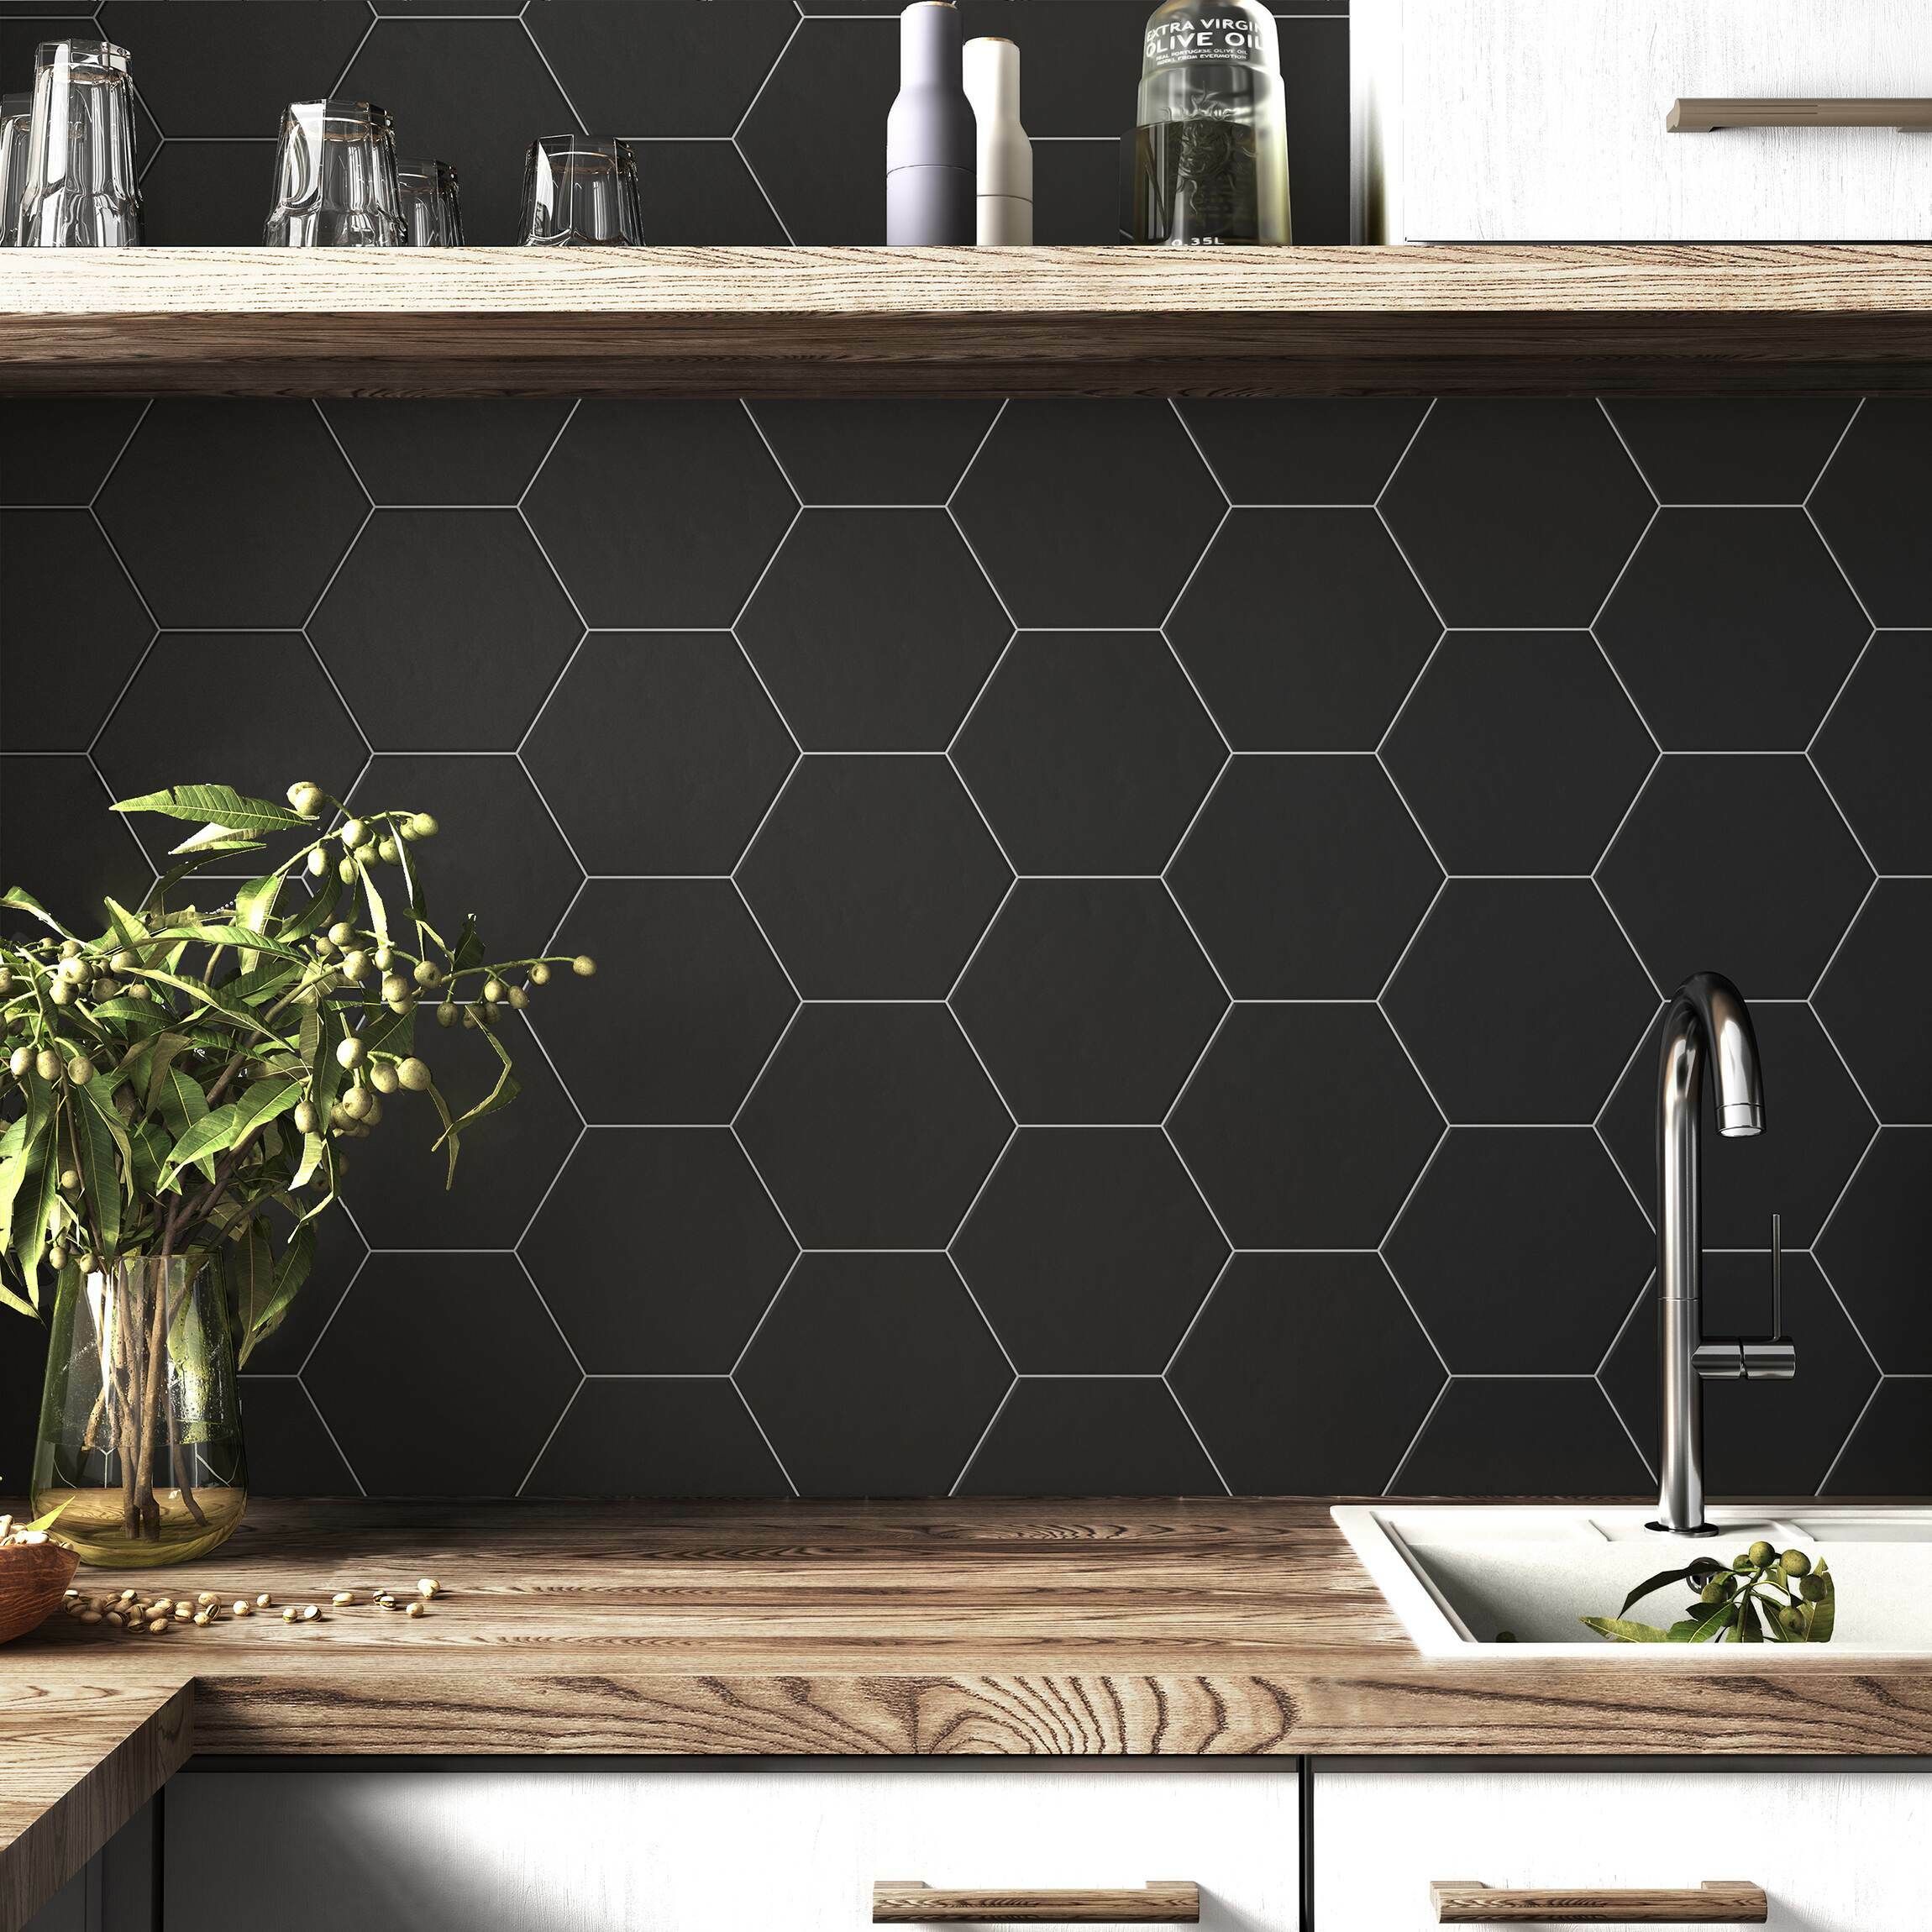 Hexagon Black 17 5x20cm From Tile Mountain - Black Wall Tiles Design